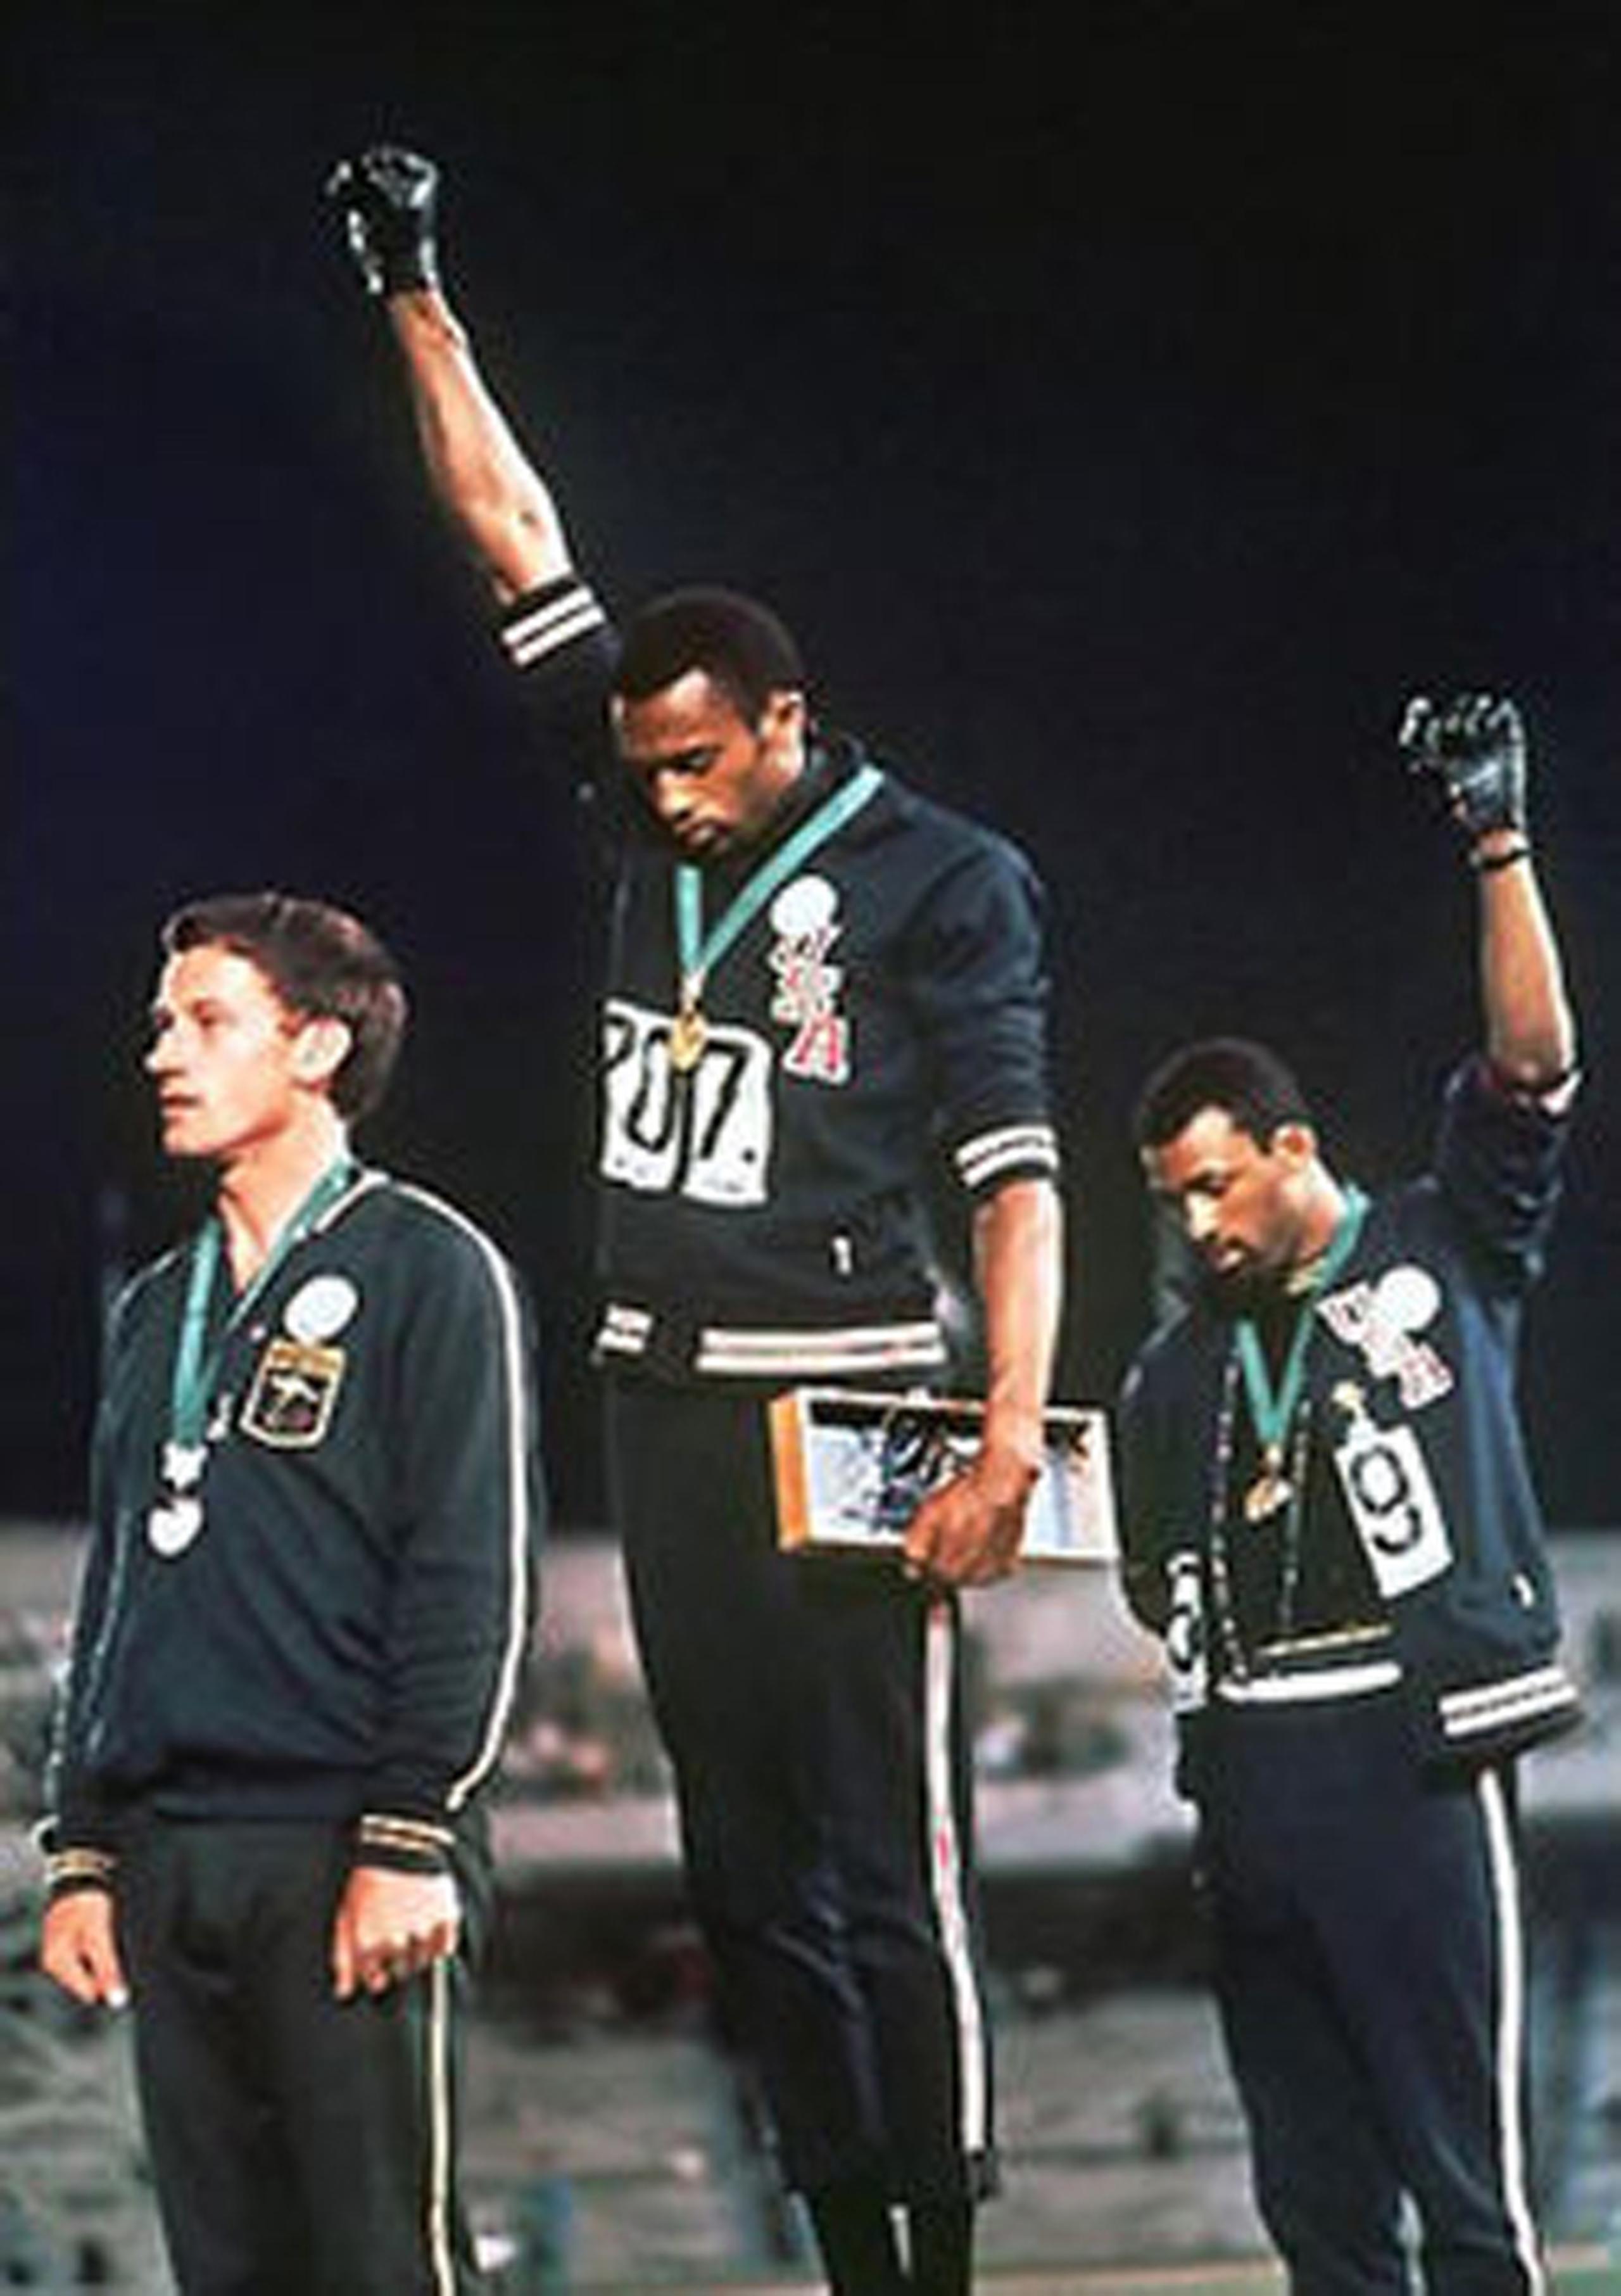 Tommie Smith (al centro) y John Carlos (derecha) hacen un saludo simbólico del movimiento Black Power durante las Olimpiadas México 1968, mientras que Peter Norman lleva una insignia apoyando el sentir de ambos corredores estadounidenses.